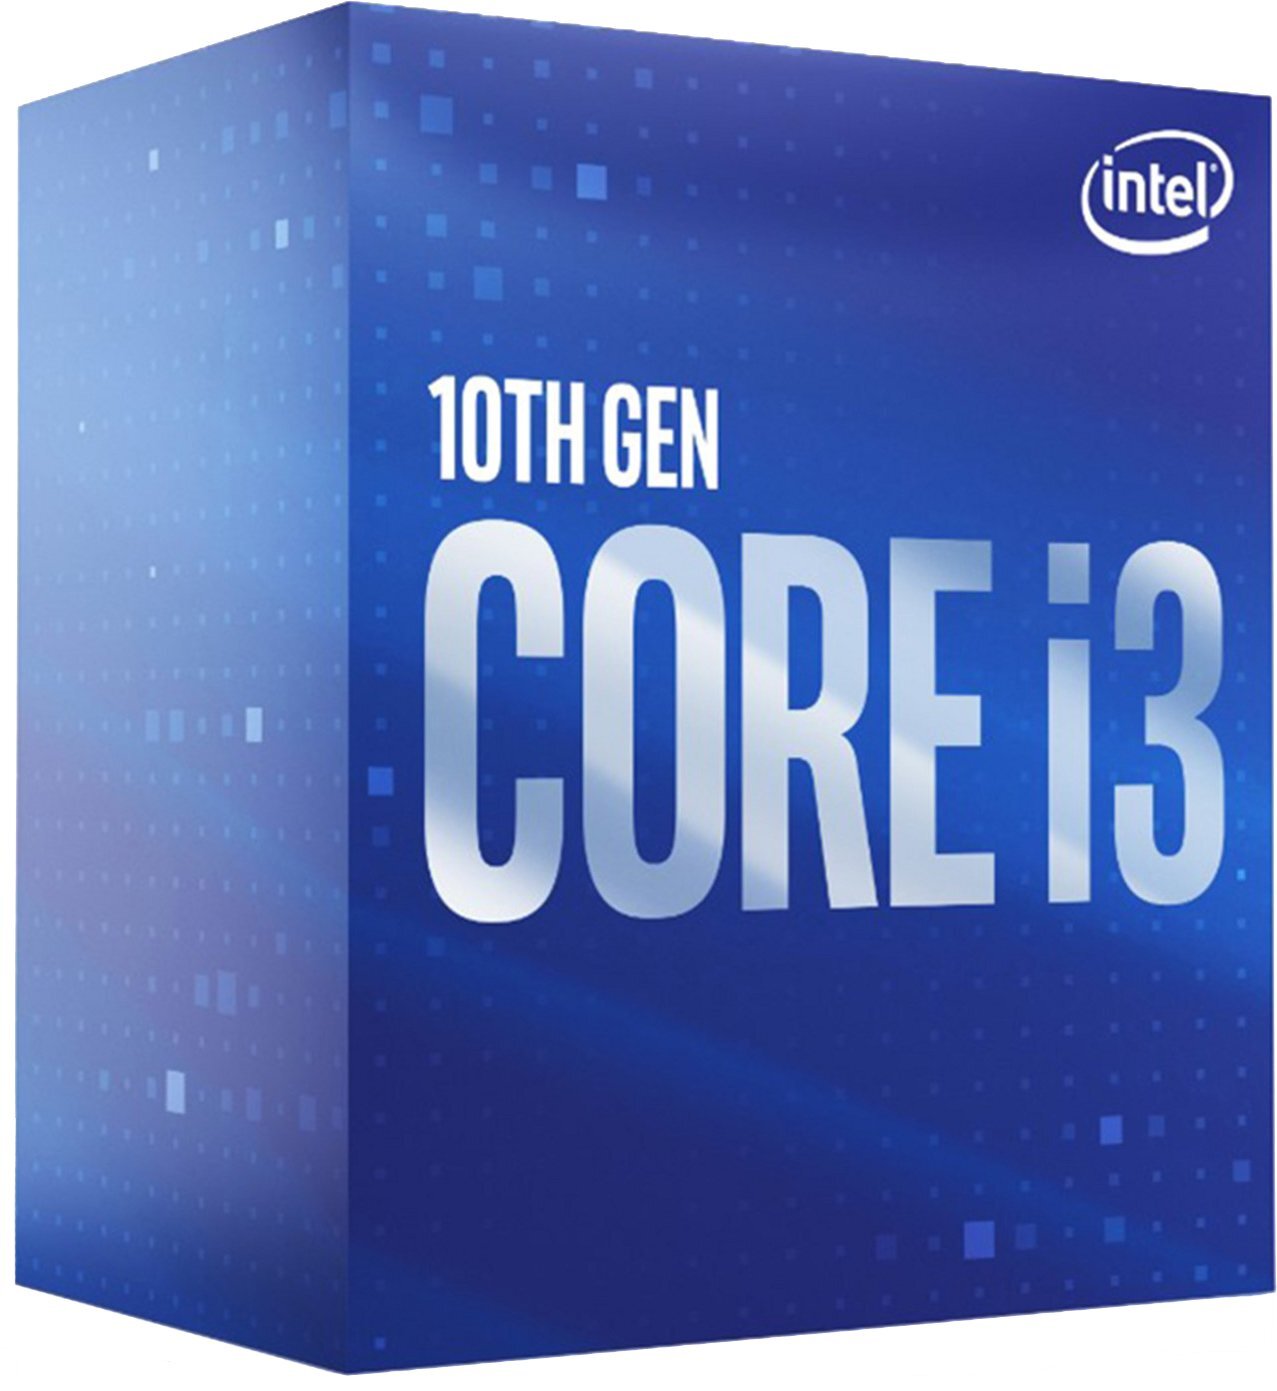 ЦПУ Intel Core i3-10105F 4/8 3.7GHz 6M LGA1200 65W graphics boxфото